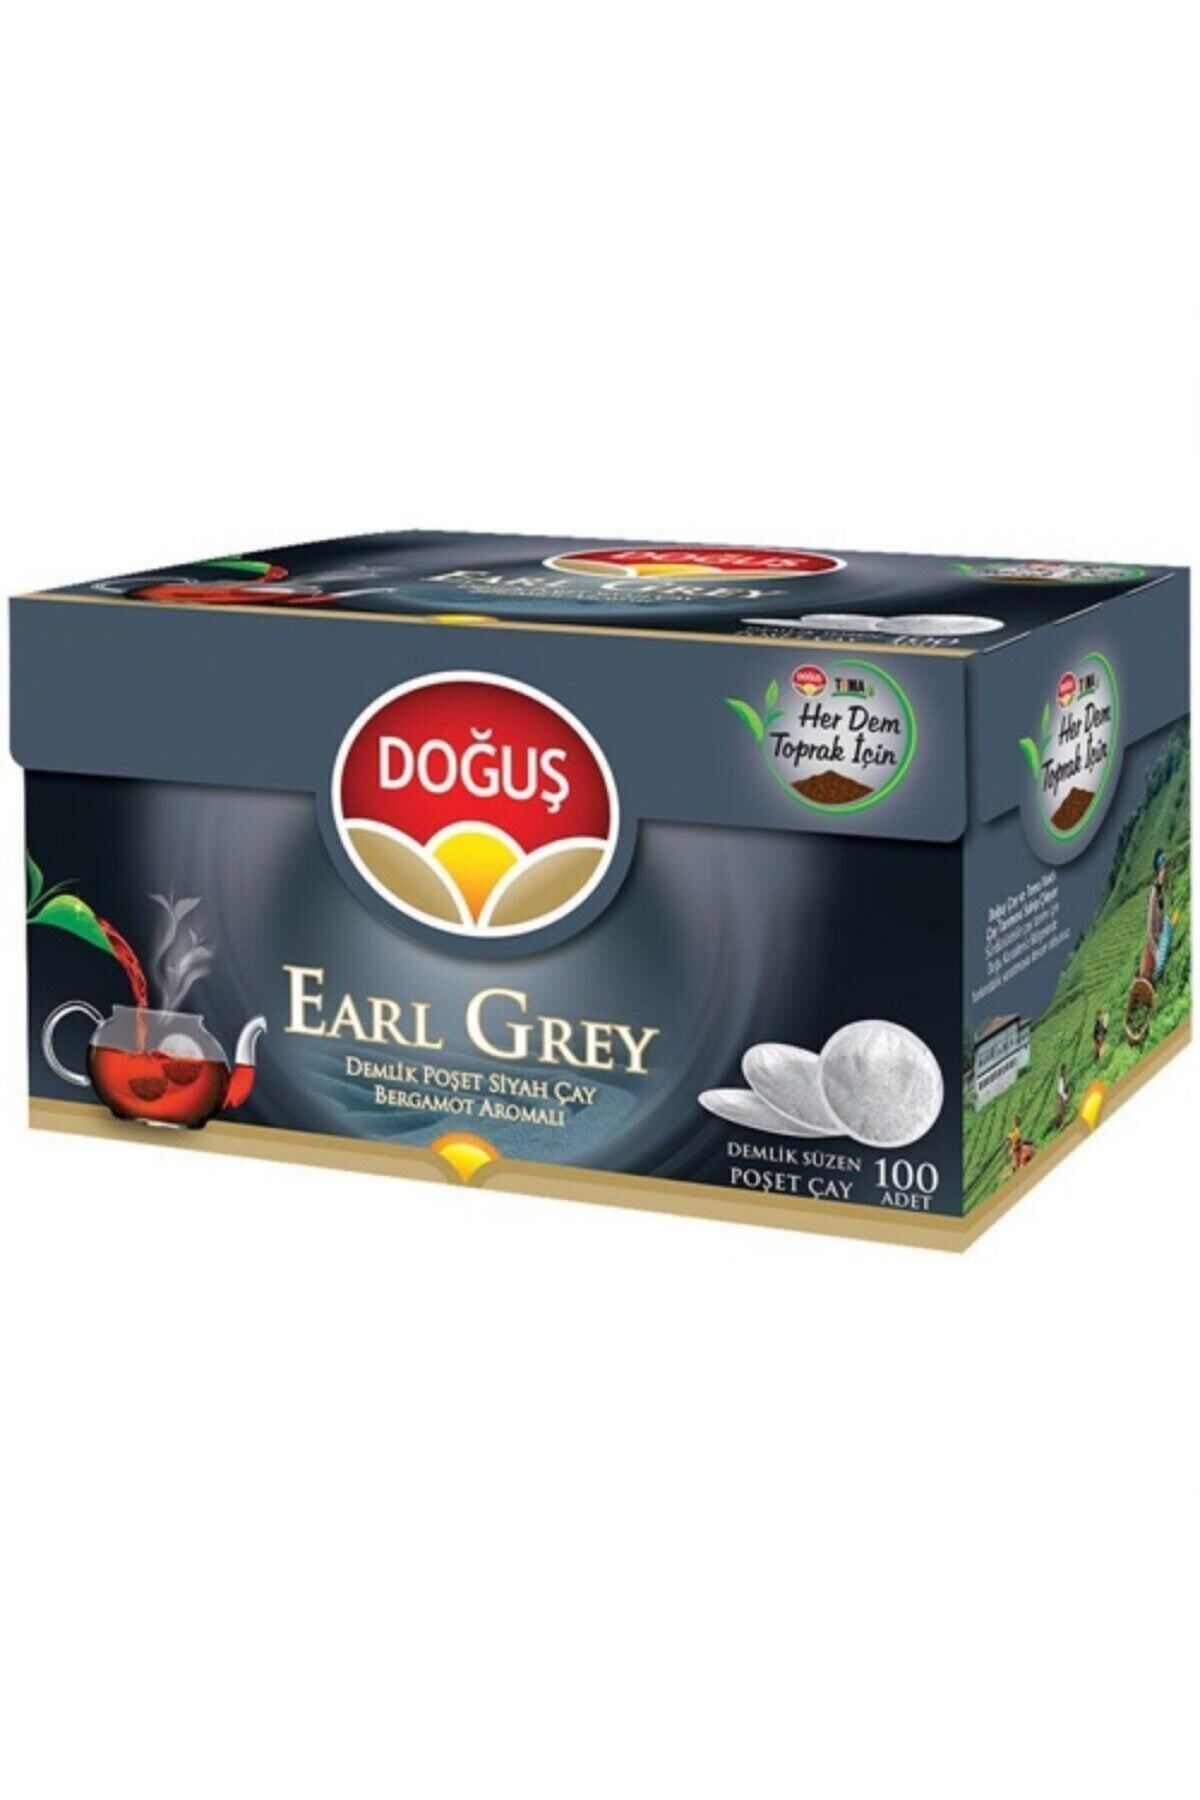 Doğuş Çay Doğuş Earl Grey Demlik Poşet 100*3,2 Gr